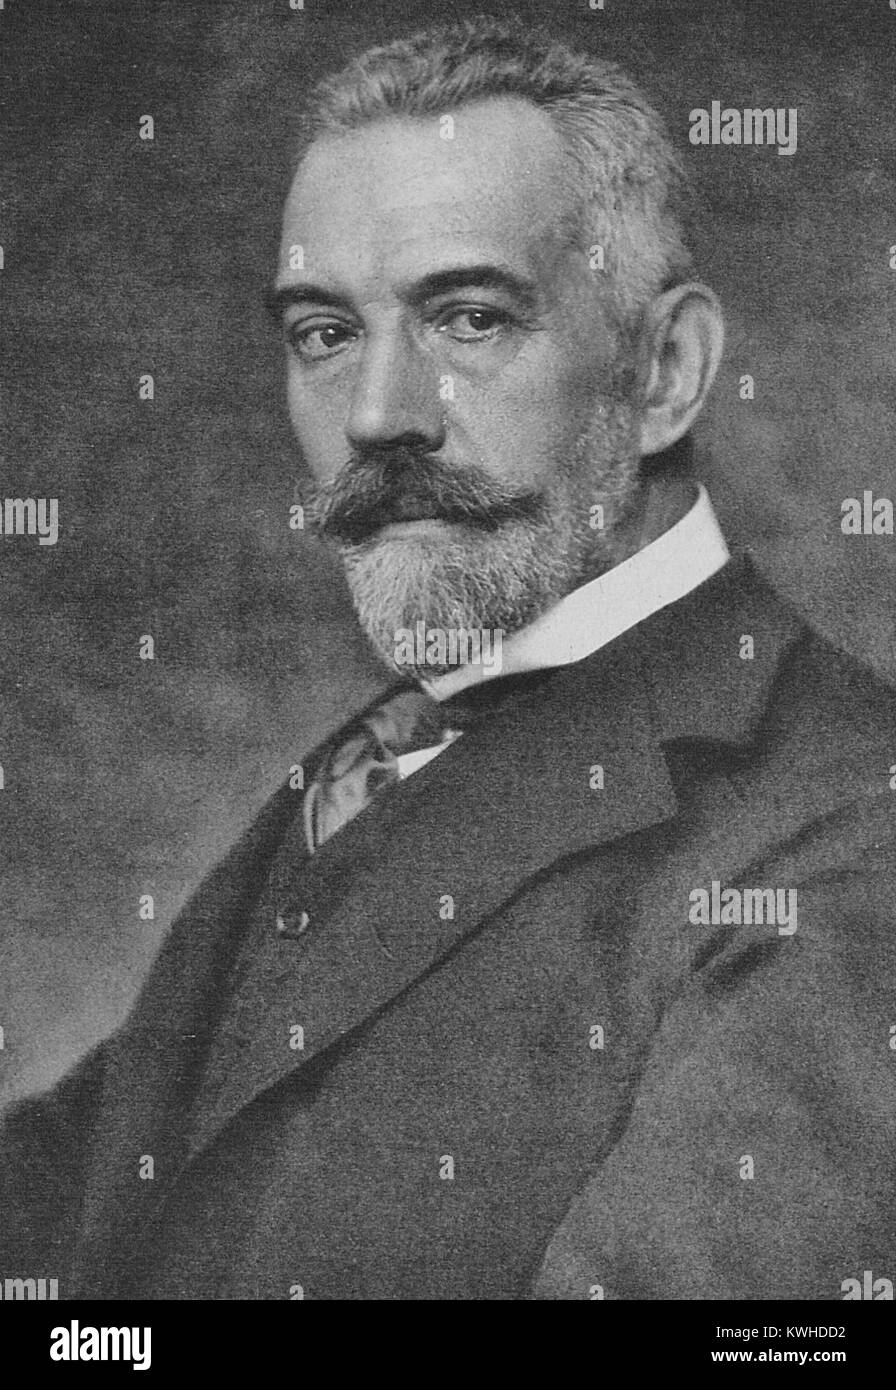 Theobald von Bethmann-Hollweg, Theobald von Bethmann-Hollweg Theodor Friedrich Alfred, deutscher Politiker, war der Kanzler des Deutschen Reiches von 1909 bis 1917. Stockfoto